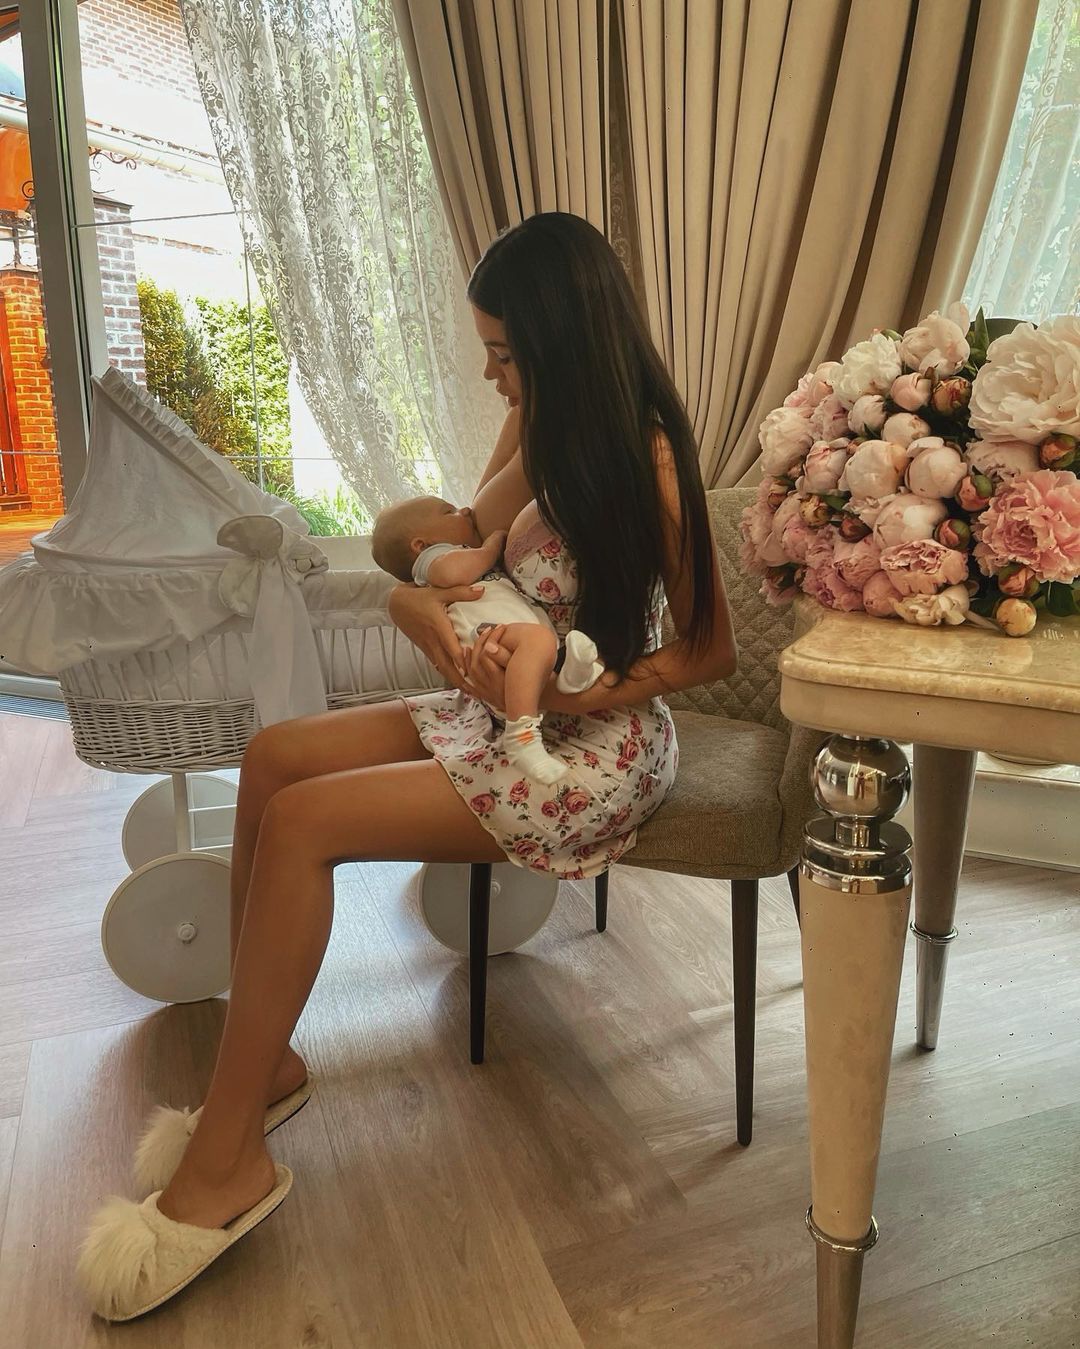 Популярную блогершу раскритиковали за слишком откровенные фото кормления младенца